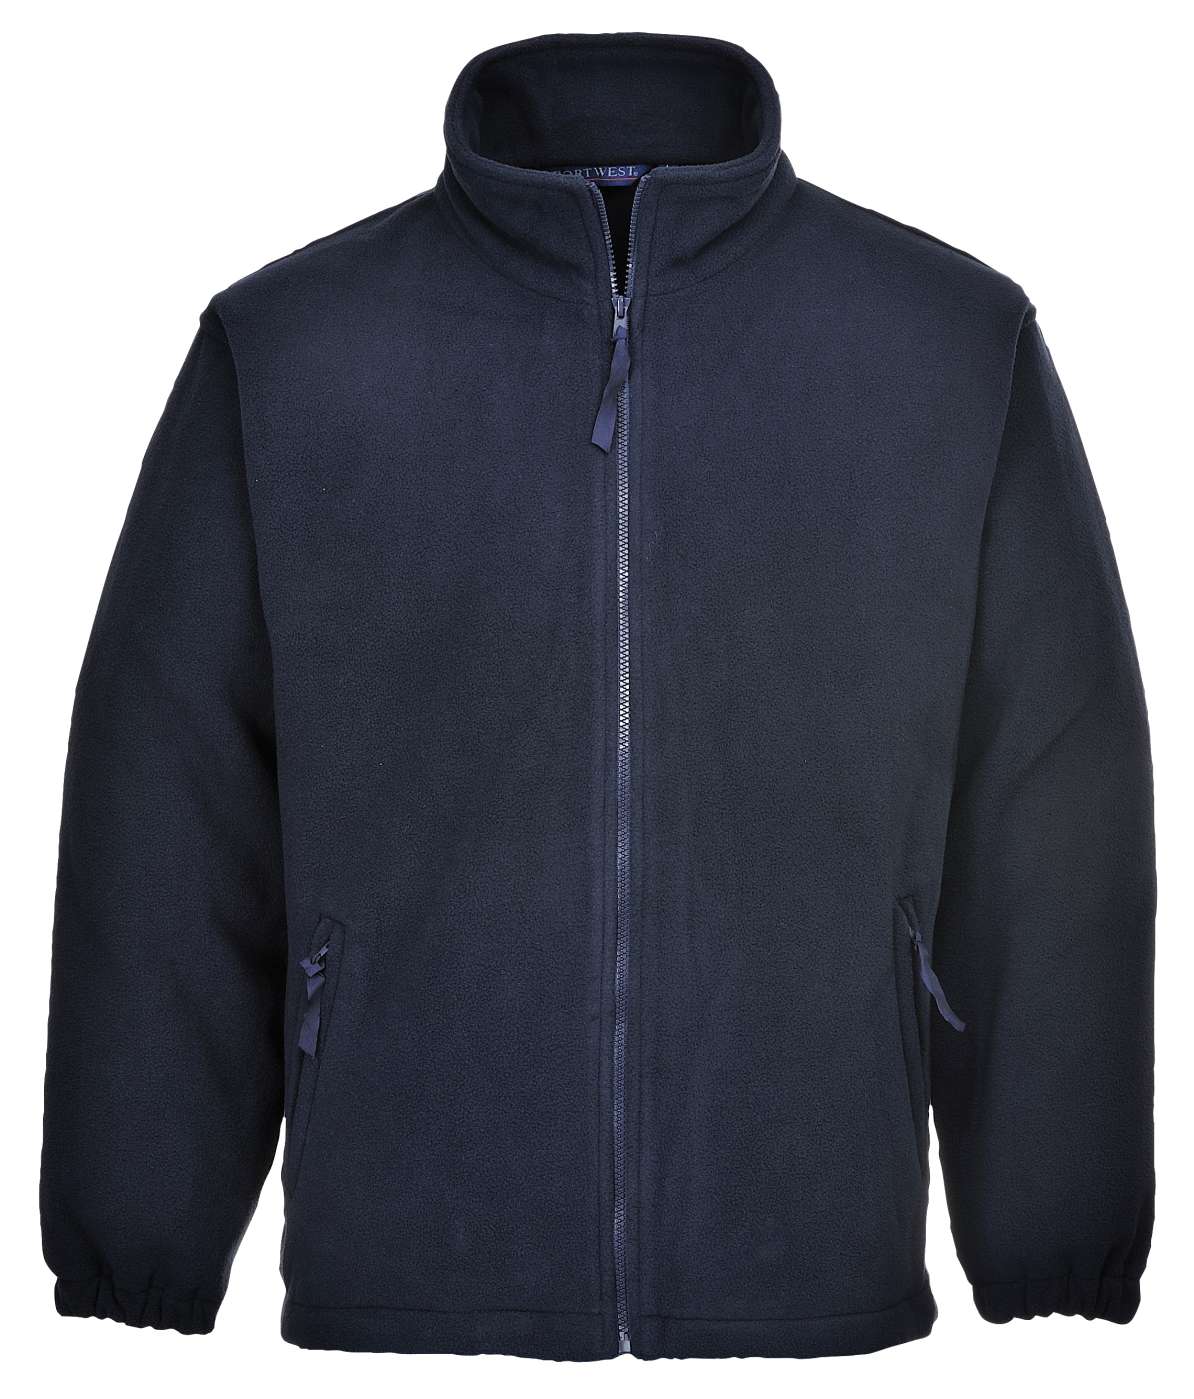 Portwest Aran Full Zip Lined Fleece Jacket F205